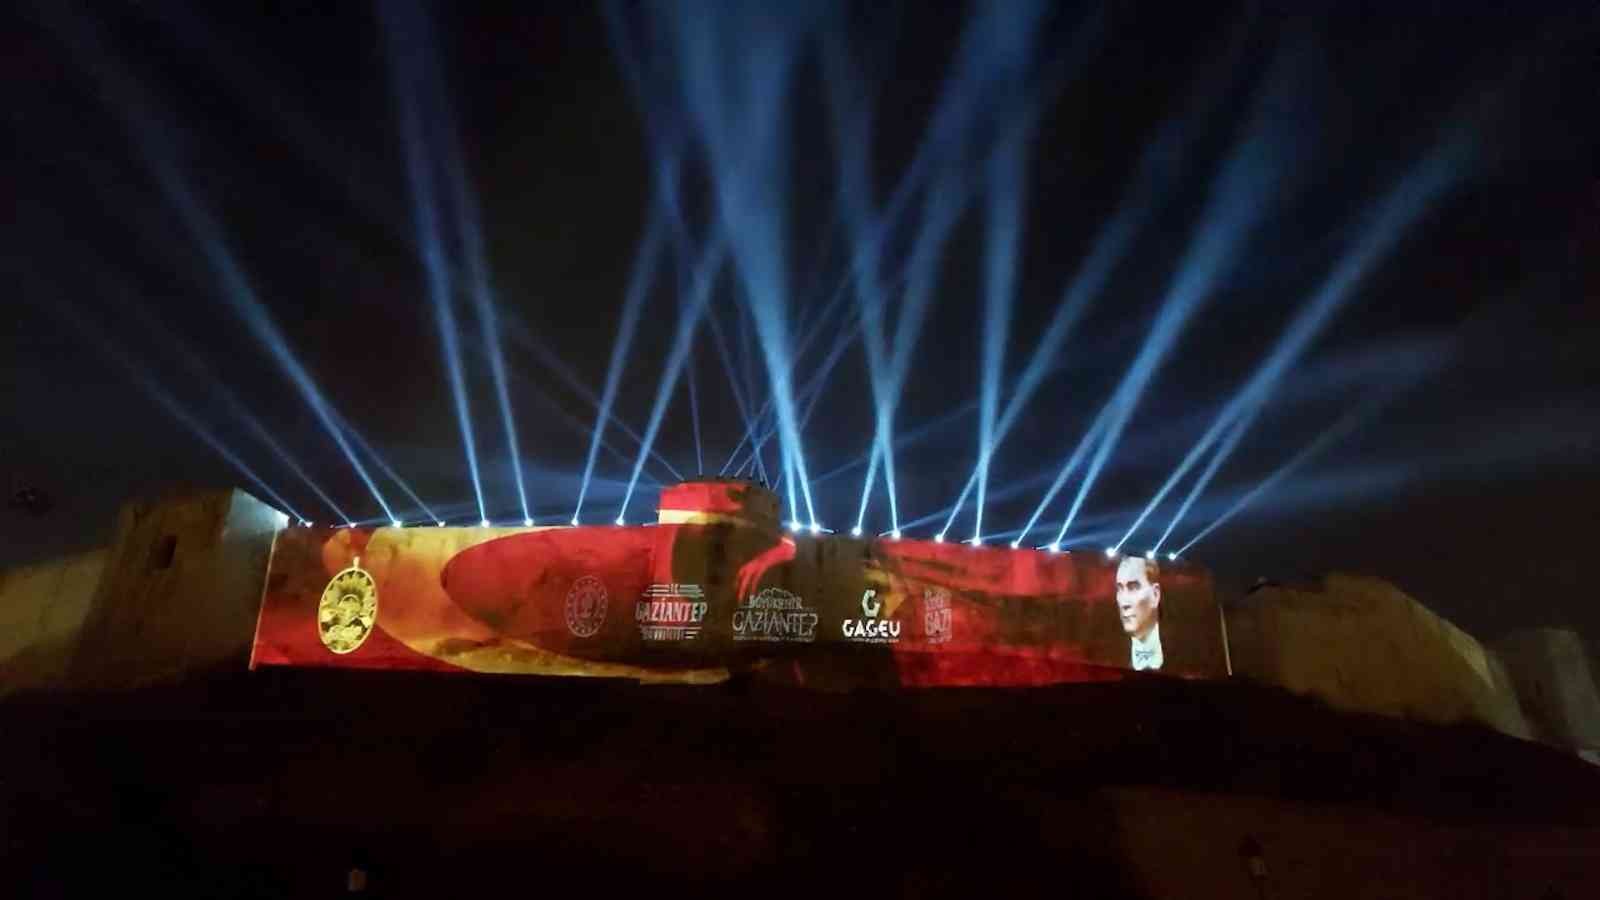 Gaziantep kalesinde 100. yıla özel ses ve ışık gösterisi #gaziantep